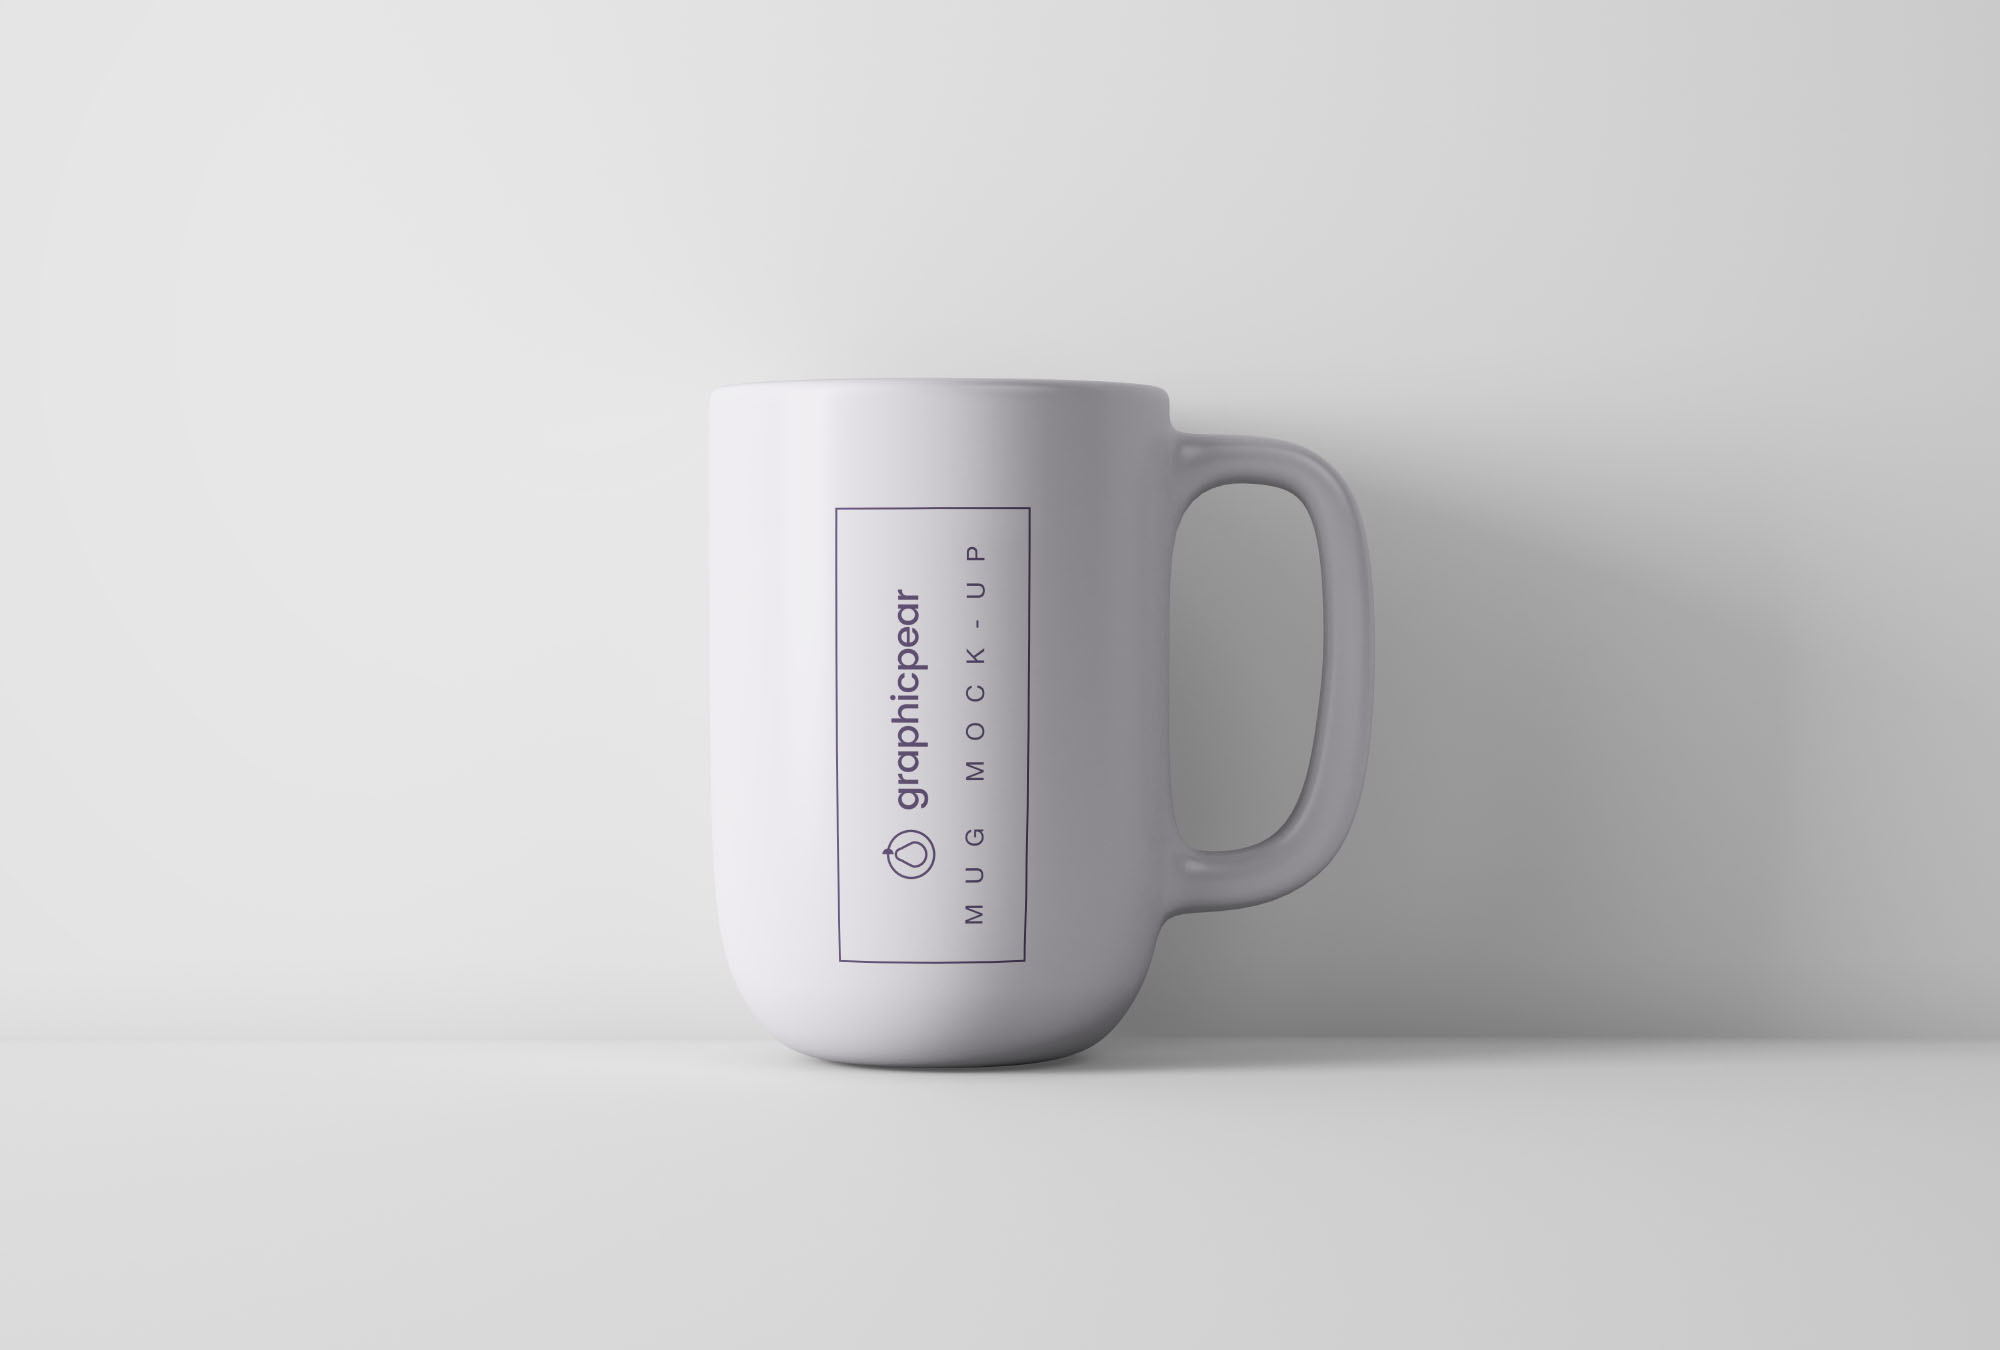 咖啡陶瓷杯外观设计PSD样机模板 Minimal Coffee Mug Mockup PSD插图